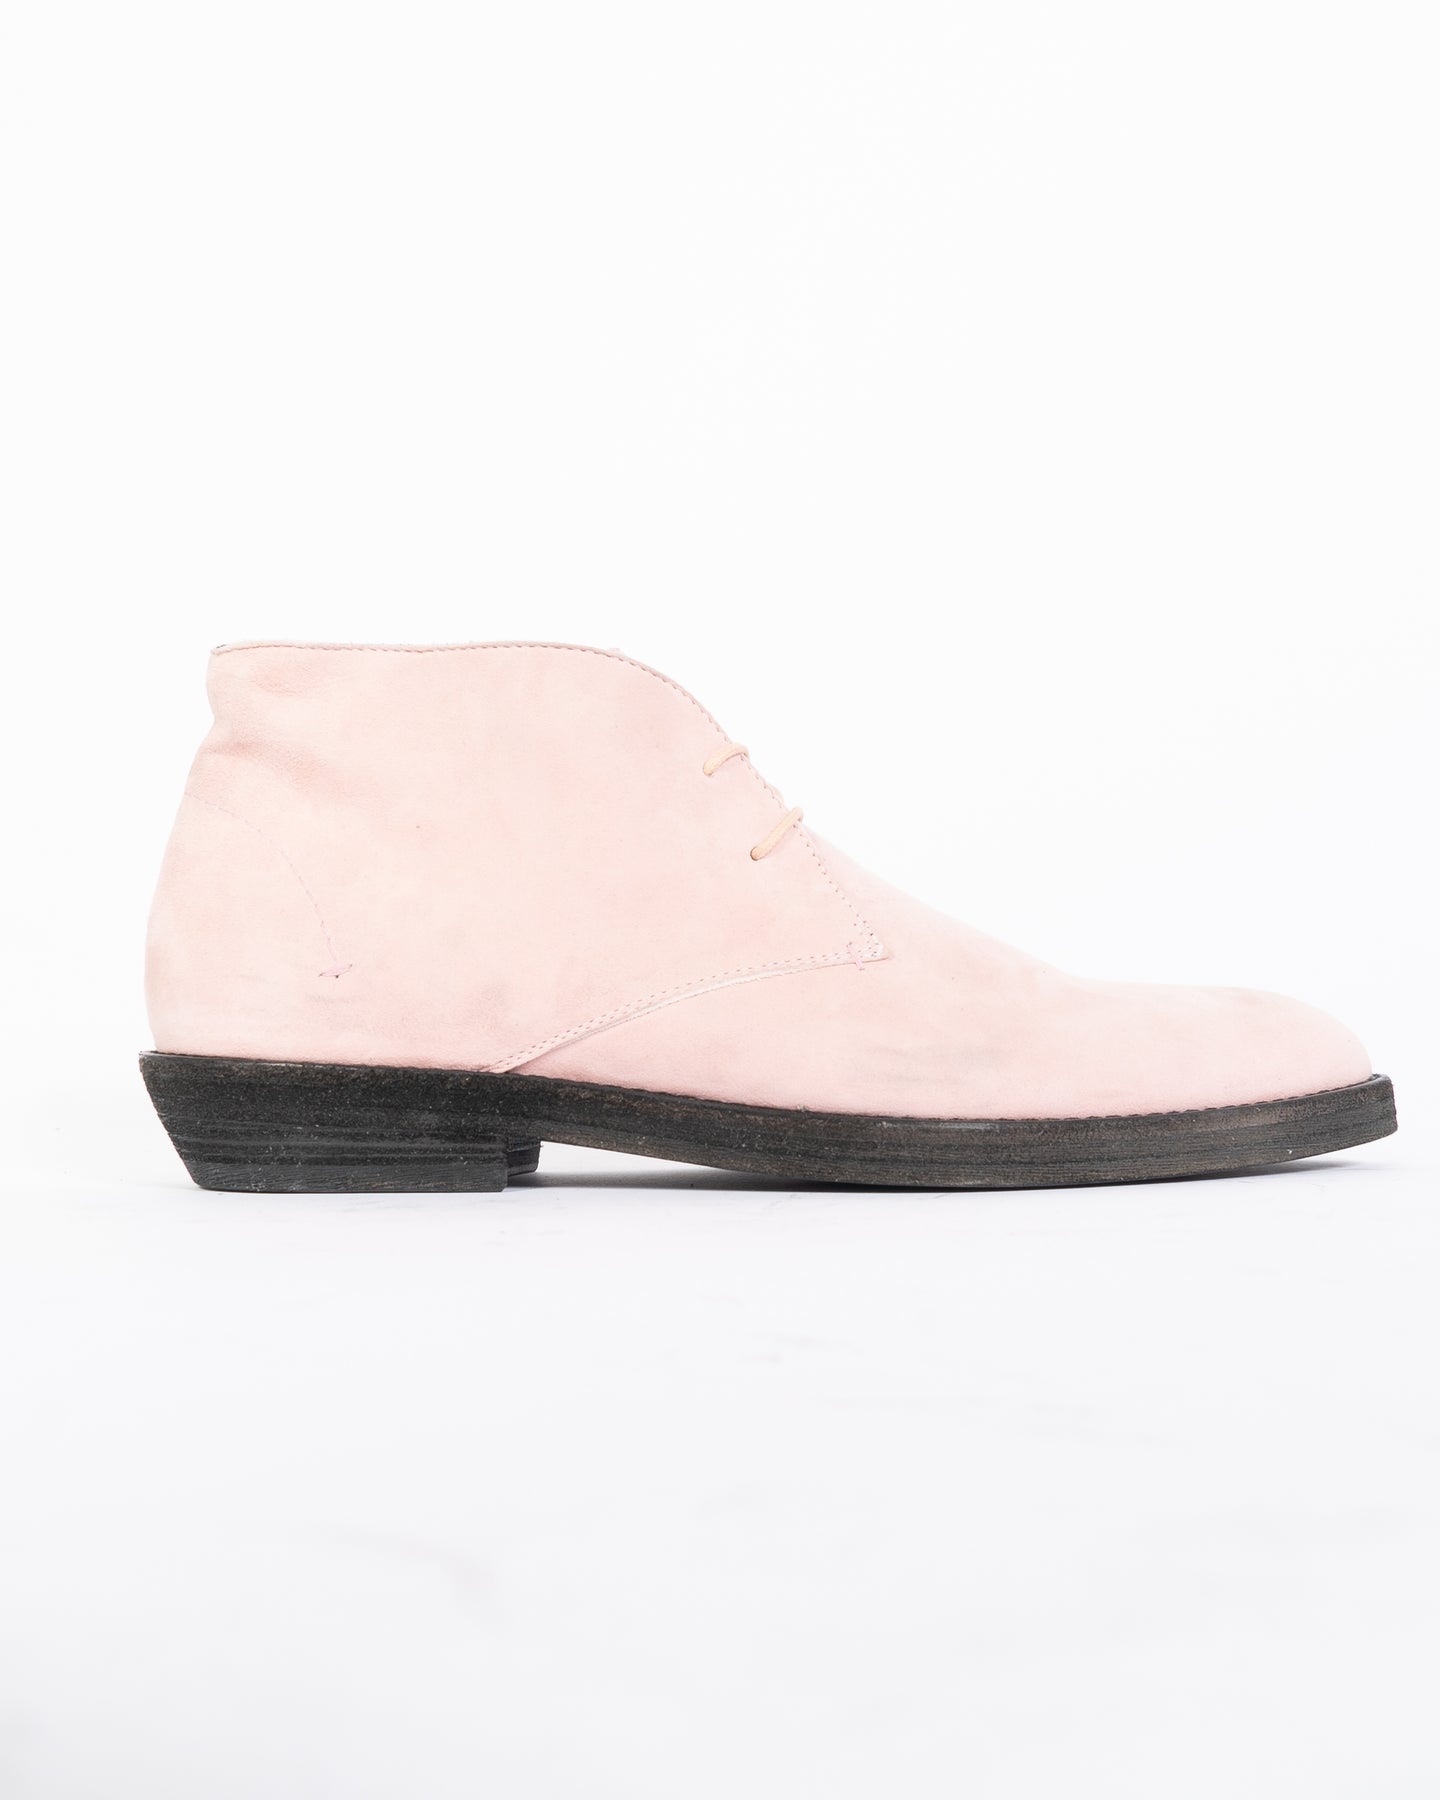 SS20 Light Pink Desert Boots